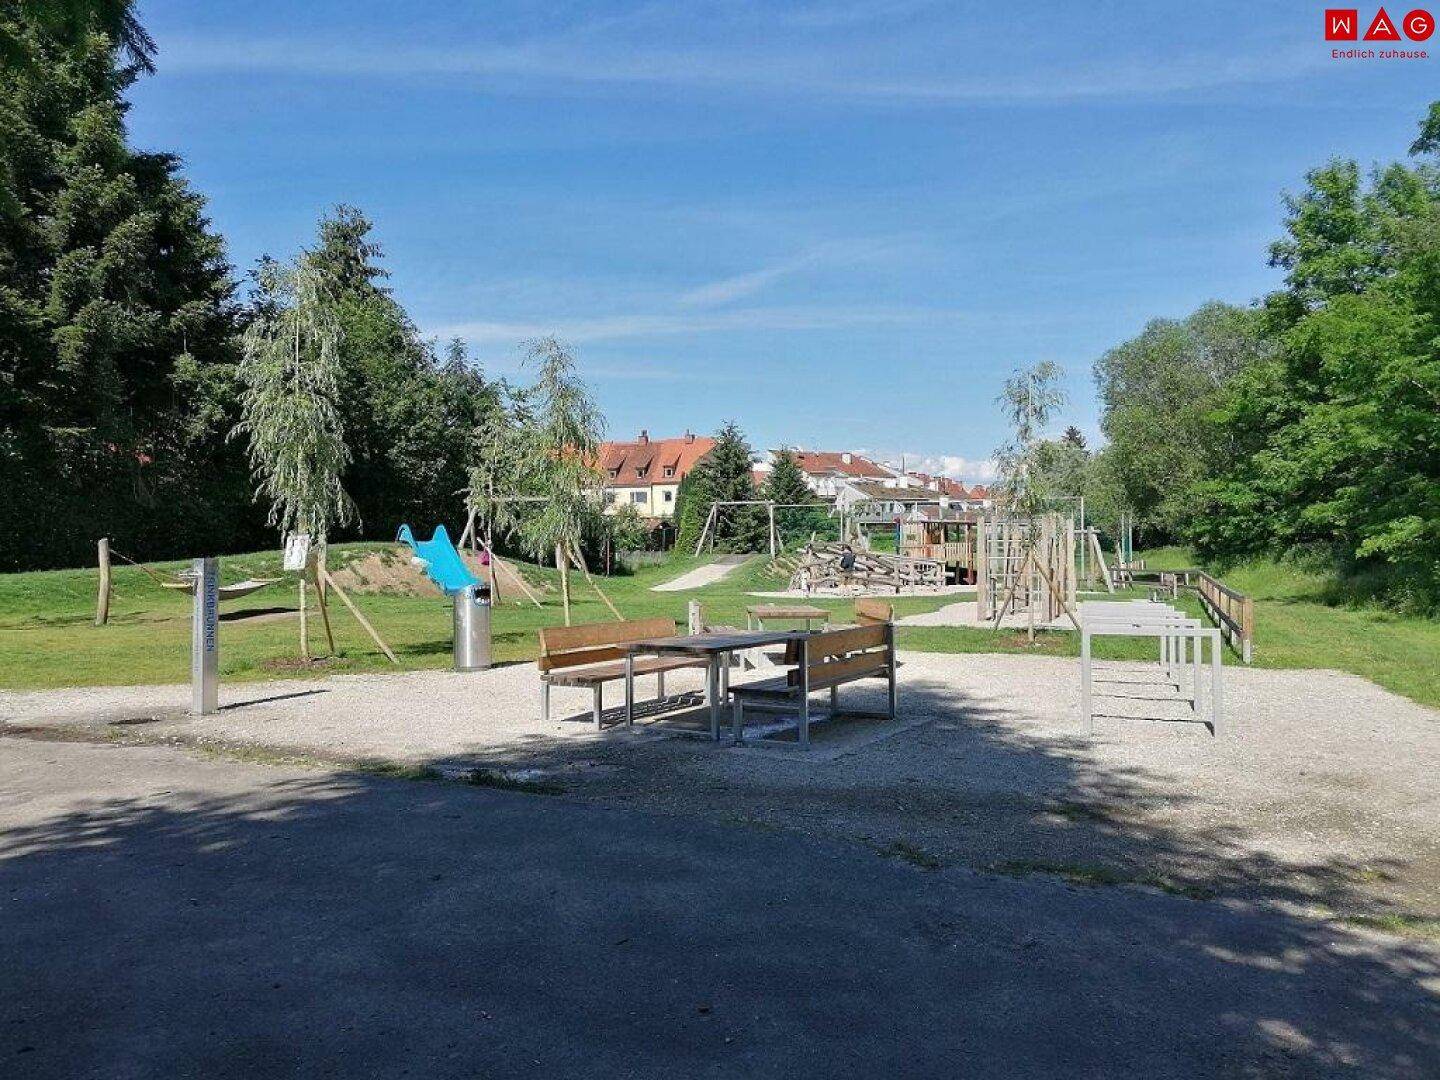 Spielplatz im Nahebereich Murufer_Radweg